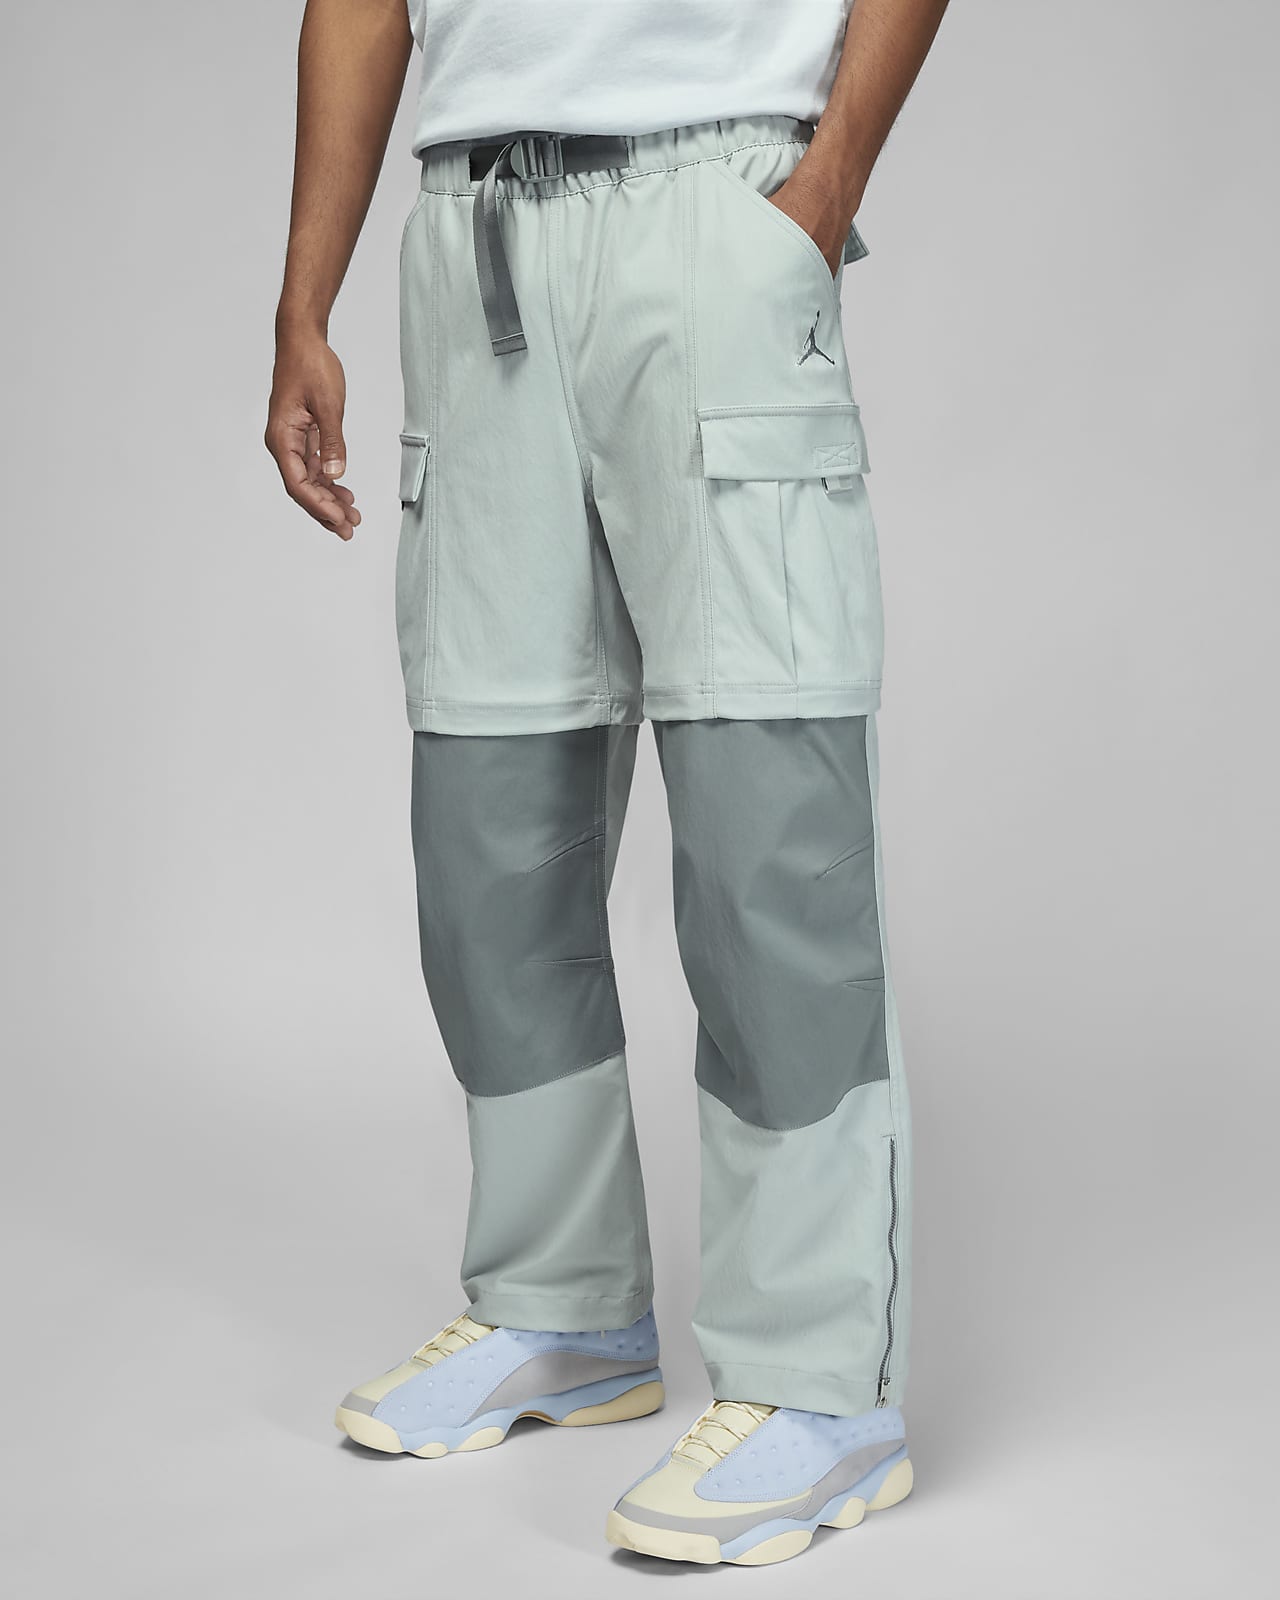 cargo pants with air jordan 1